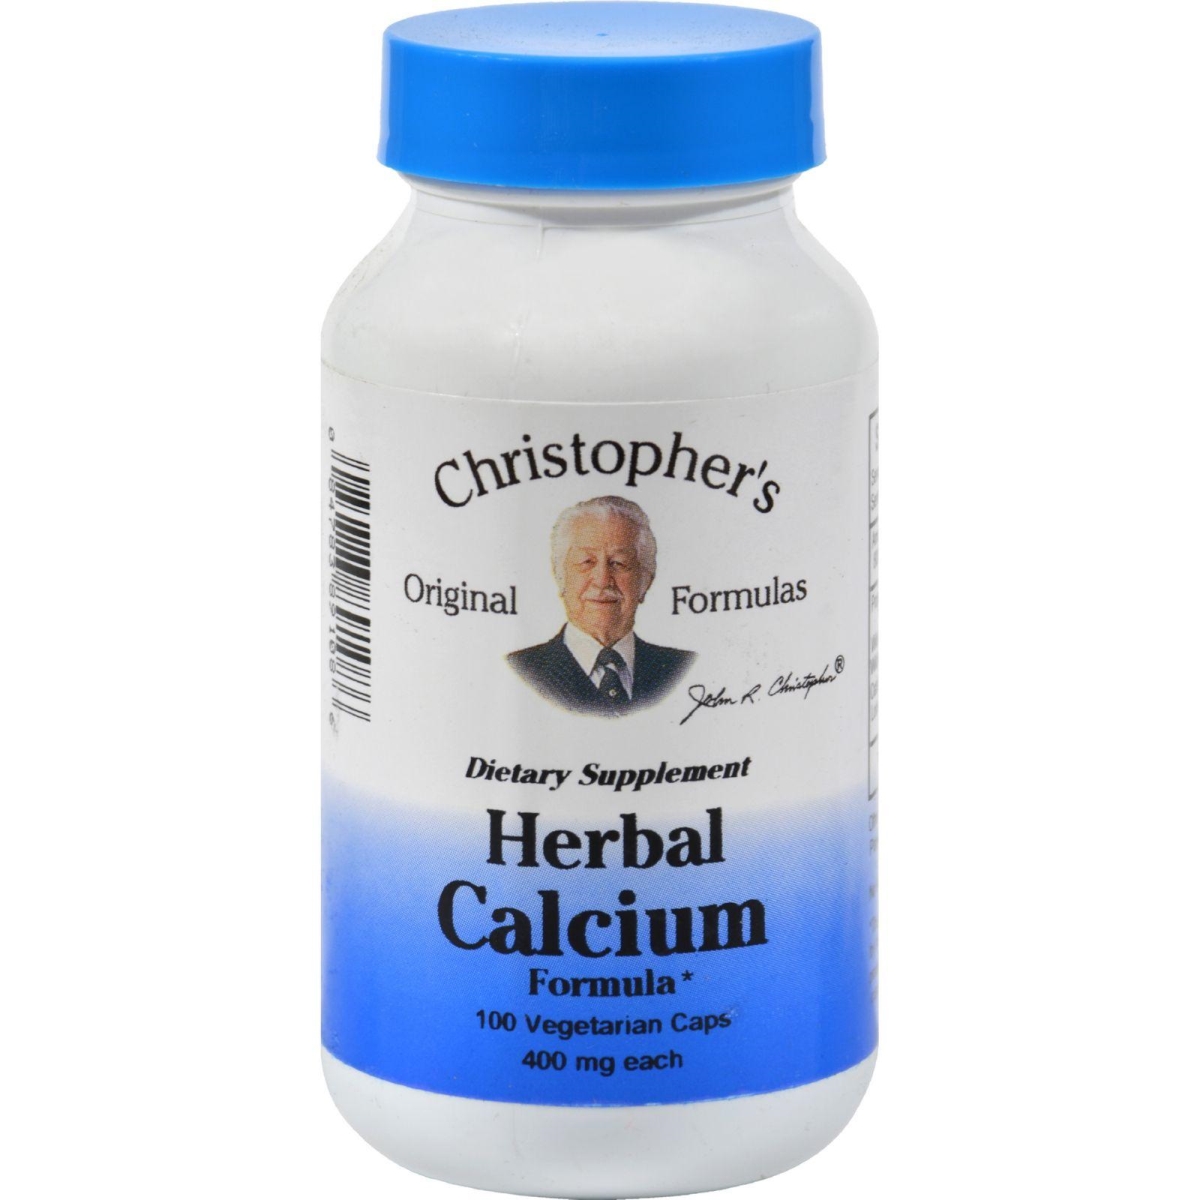 Hg0411256 425 Mg Herbal Calcium Formula, 100 Capsules